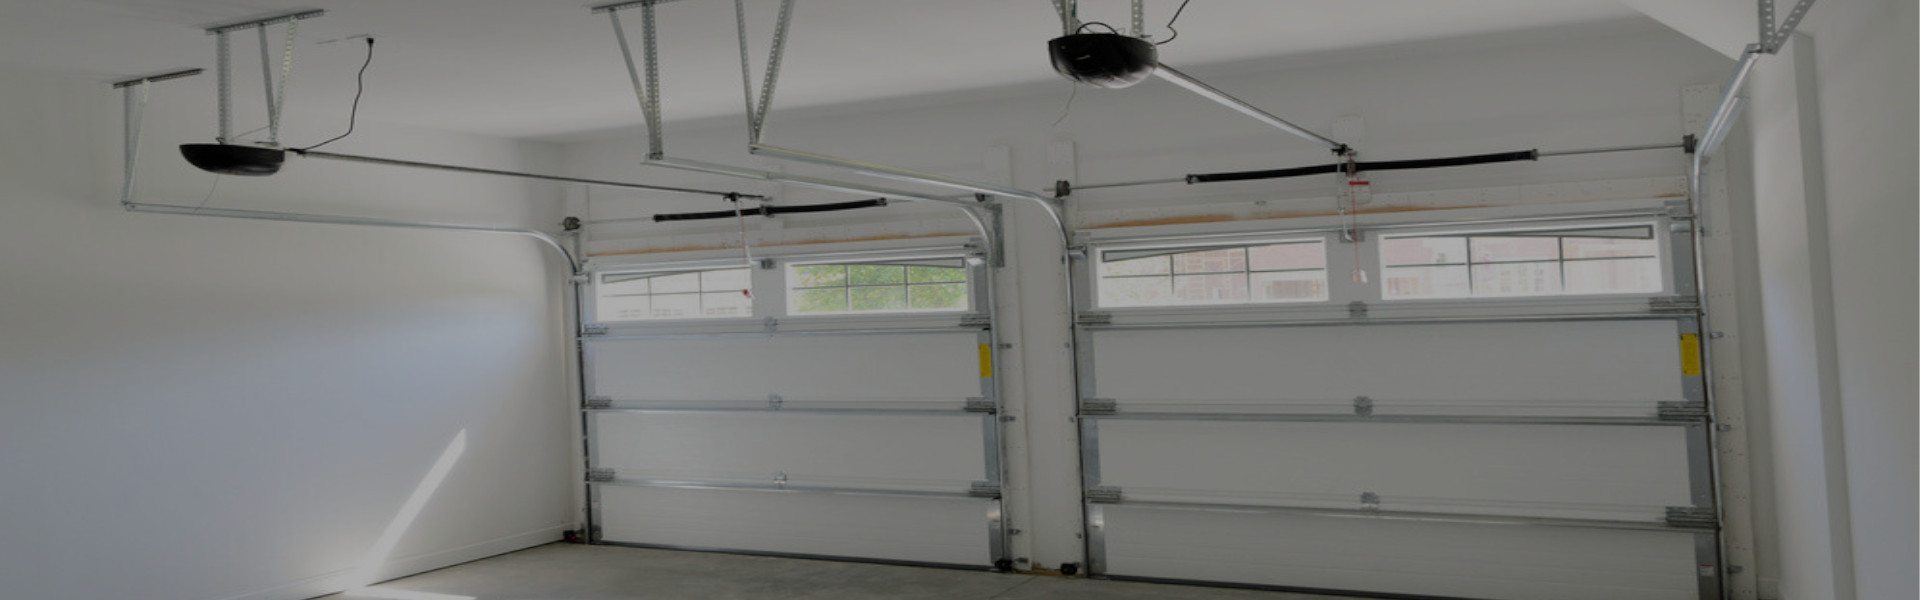 Slider Garage Door Repair, Glaziers in Swanley, Hextable, Crockenhill, BR8